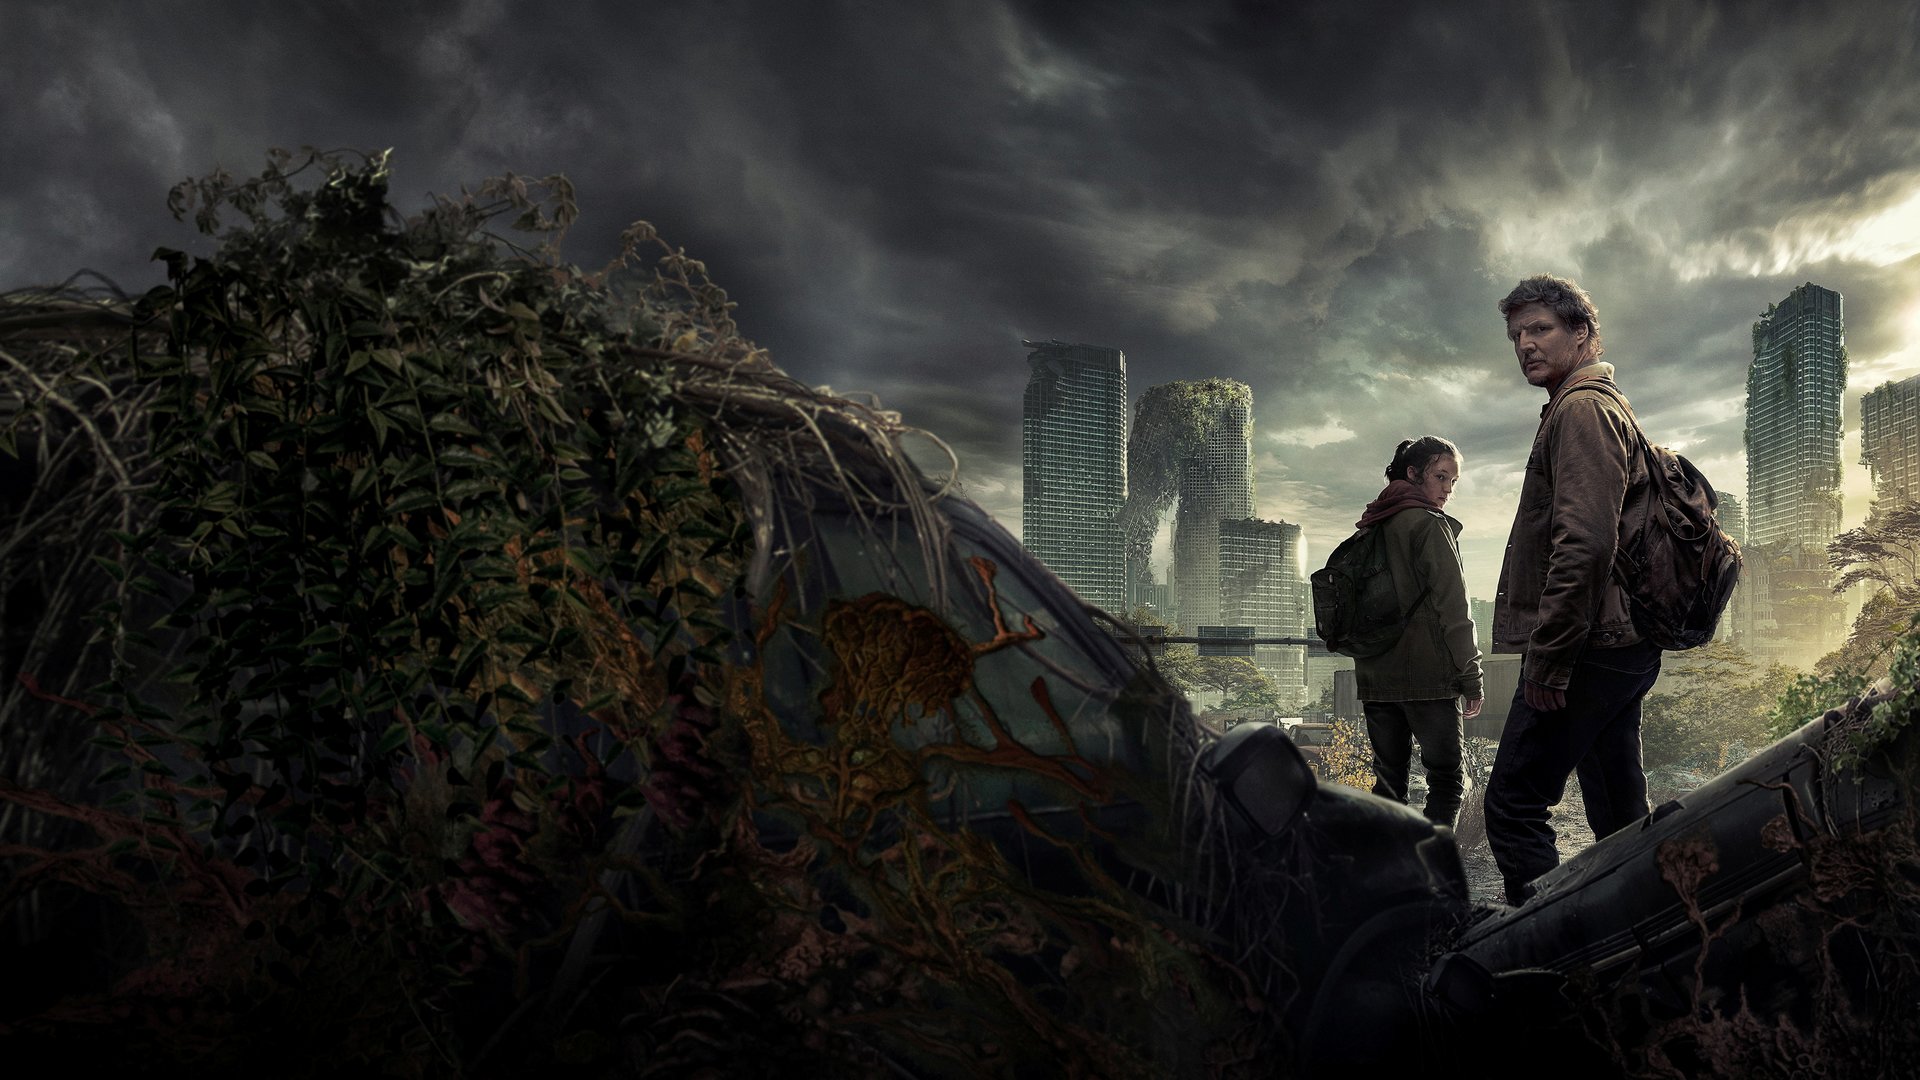 #„The Last of Us“ Sendetermine und Episodenguide: Wann kommt die nächste Folge im Stream?